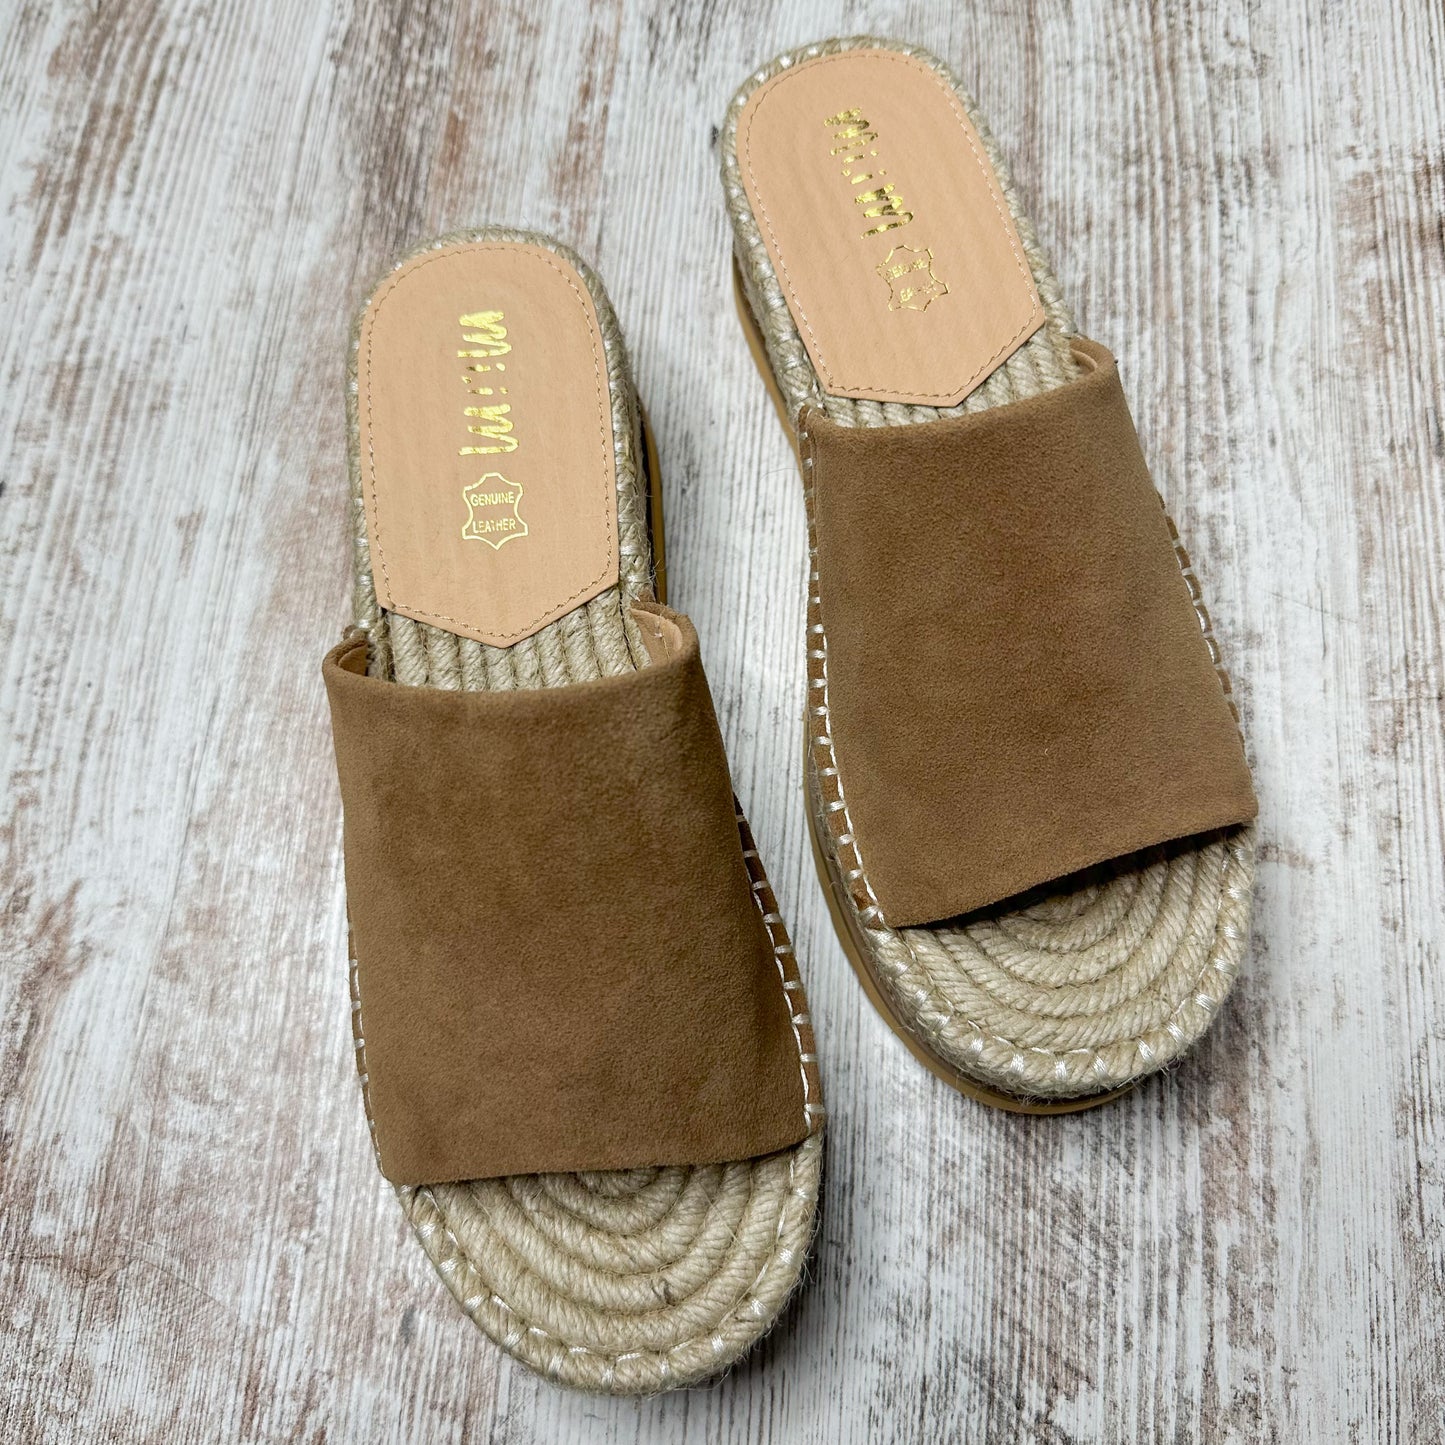 Vici Isolda Platform Espadrille Sandals in Taupe Size 8.5